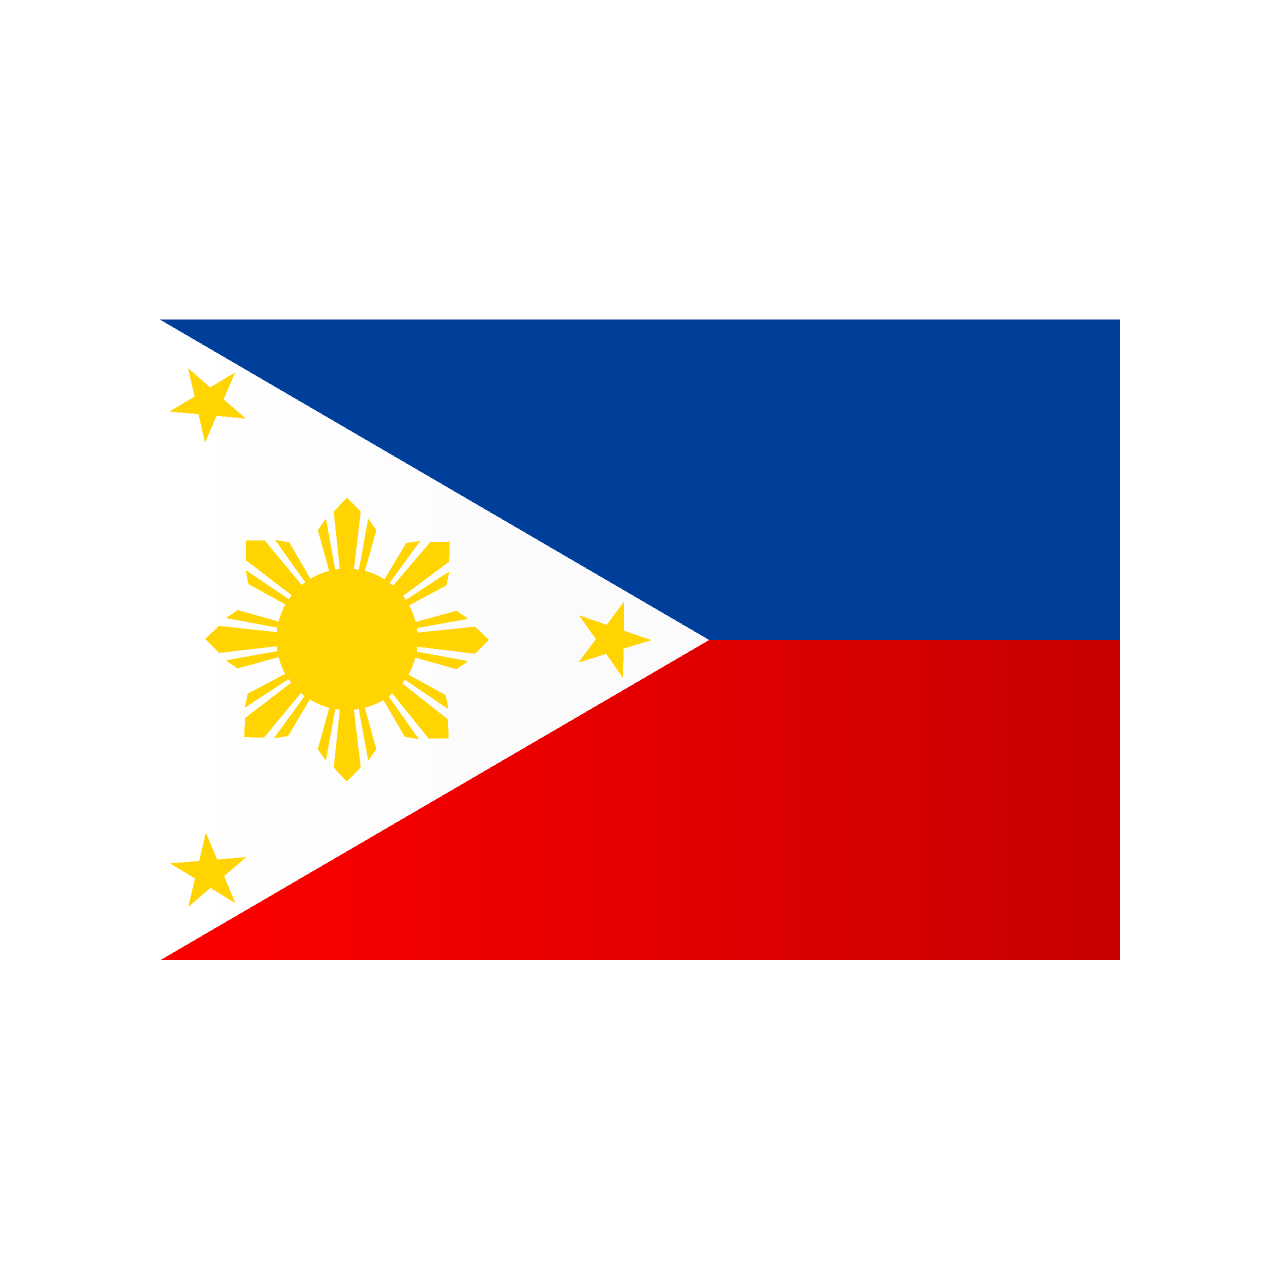 フィリピン国旗 イラスト素材 超多くの無料かわいいイラスト素材